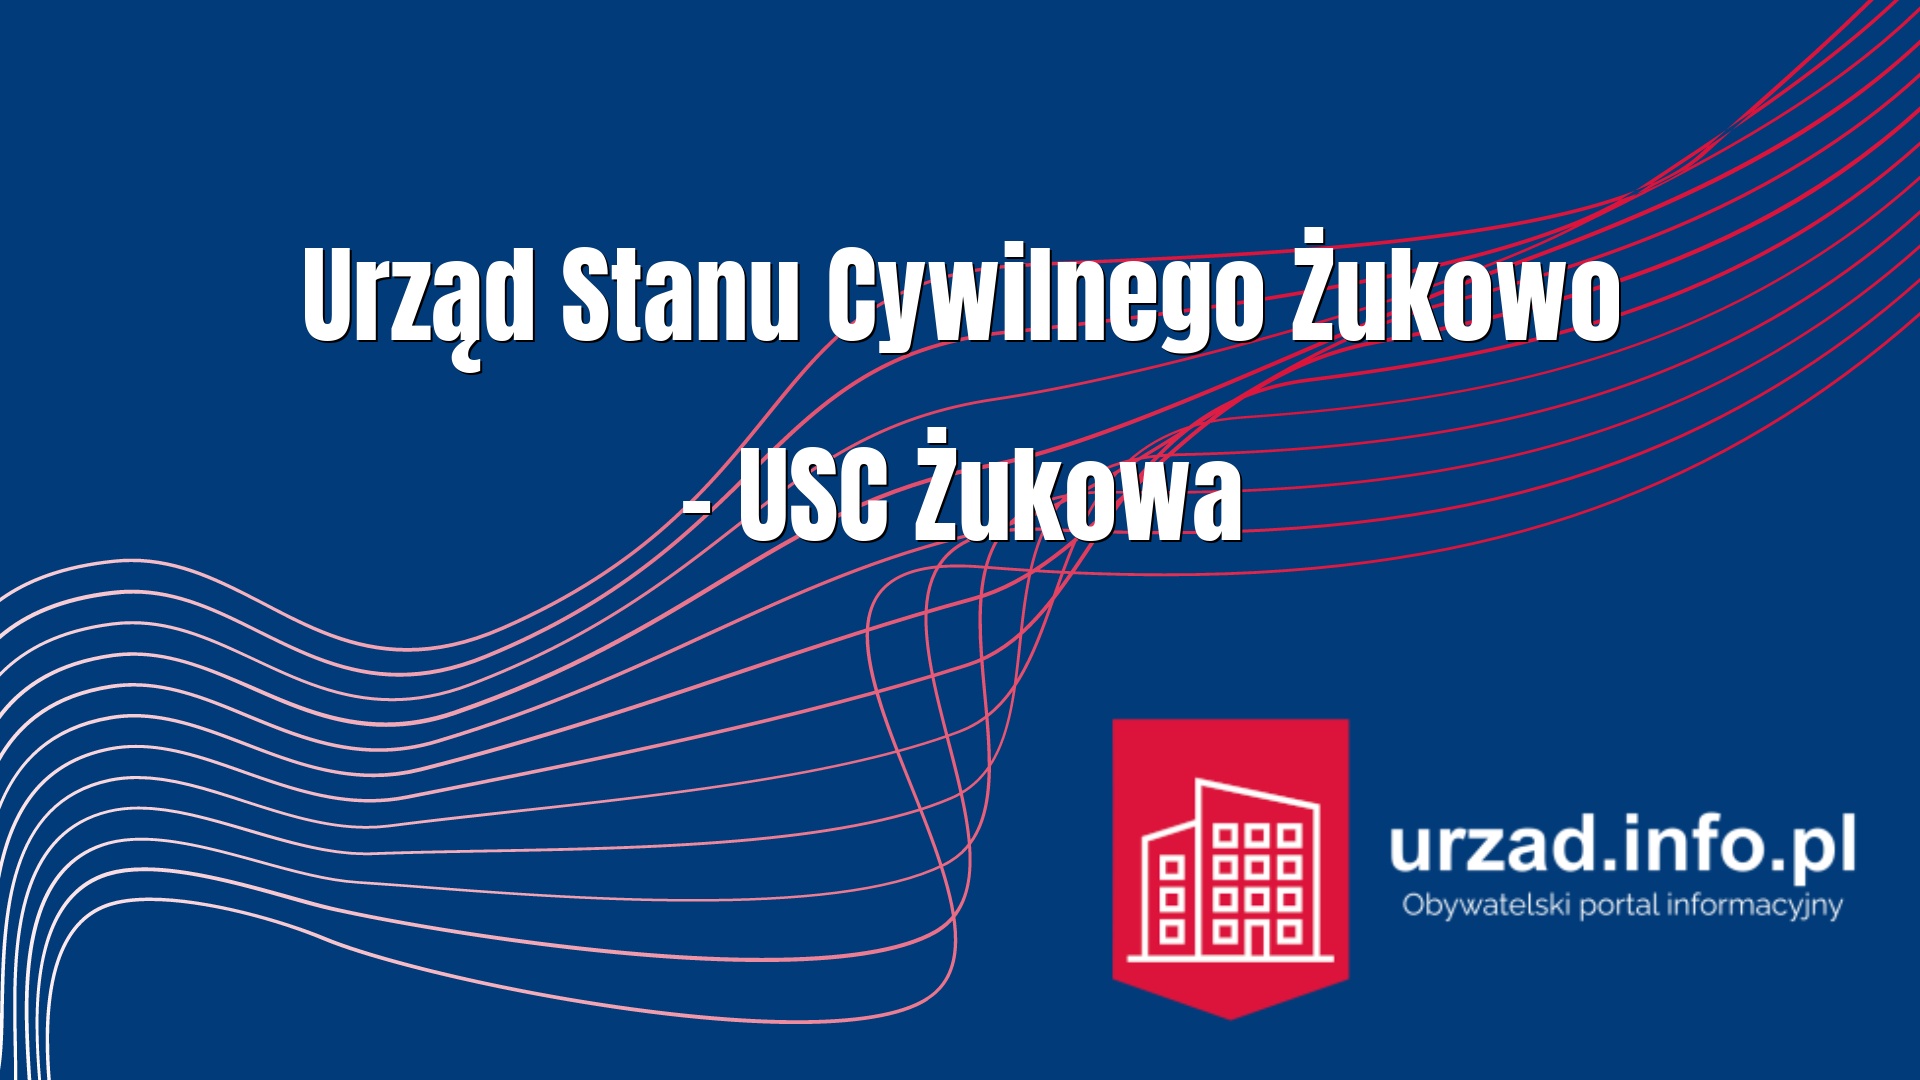 Urząd Stanu Cywilnego Żukowo – USC Żukowa